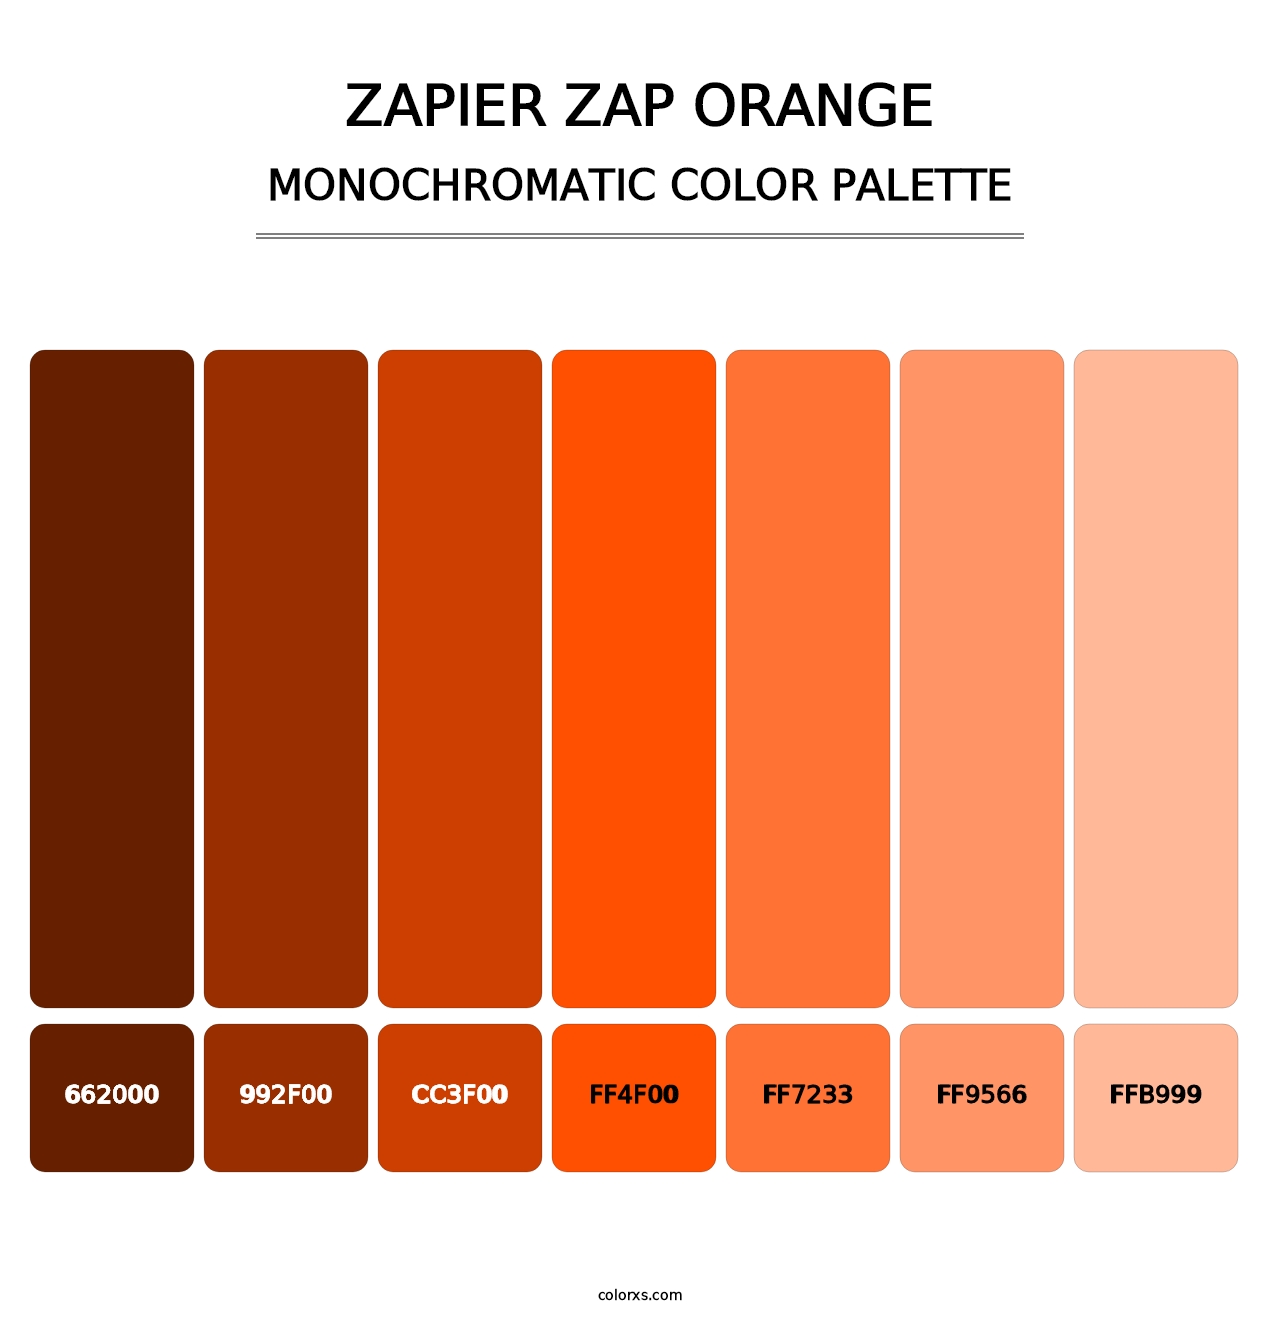 Zapier Zap Orange - Monochromatic Color Palette